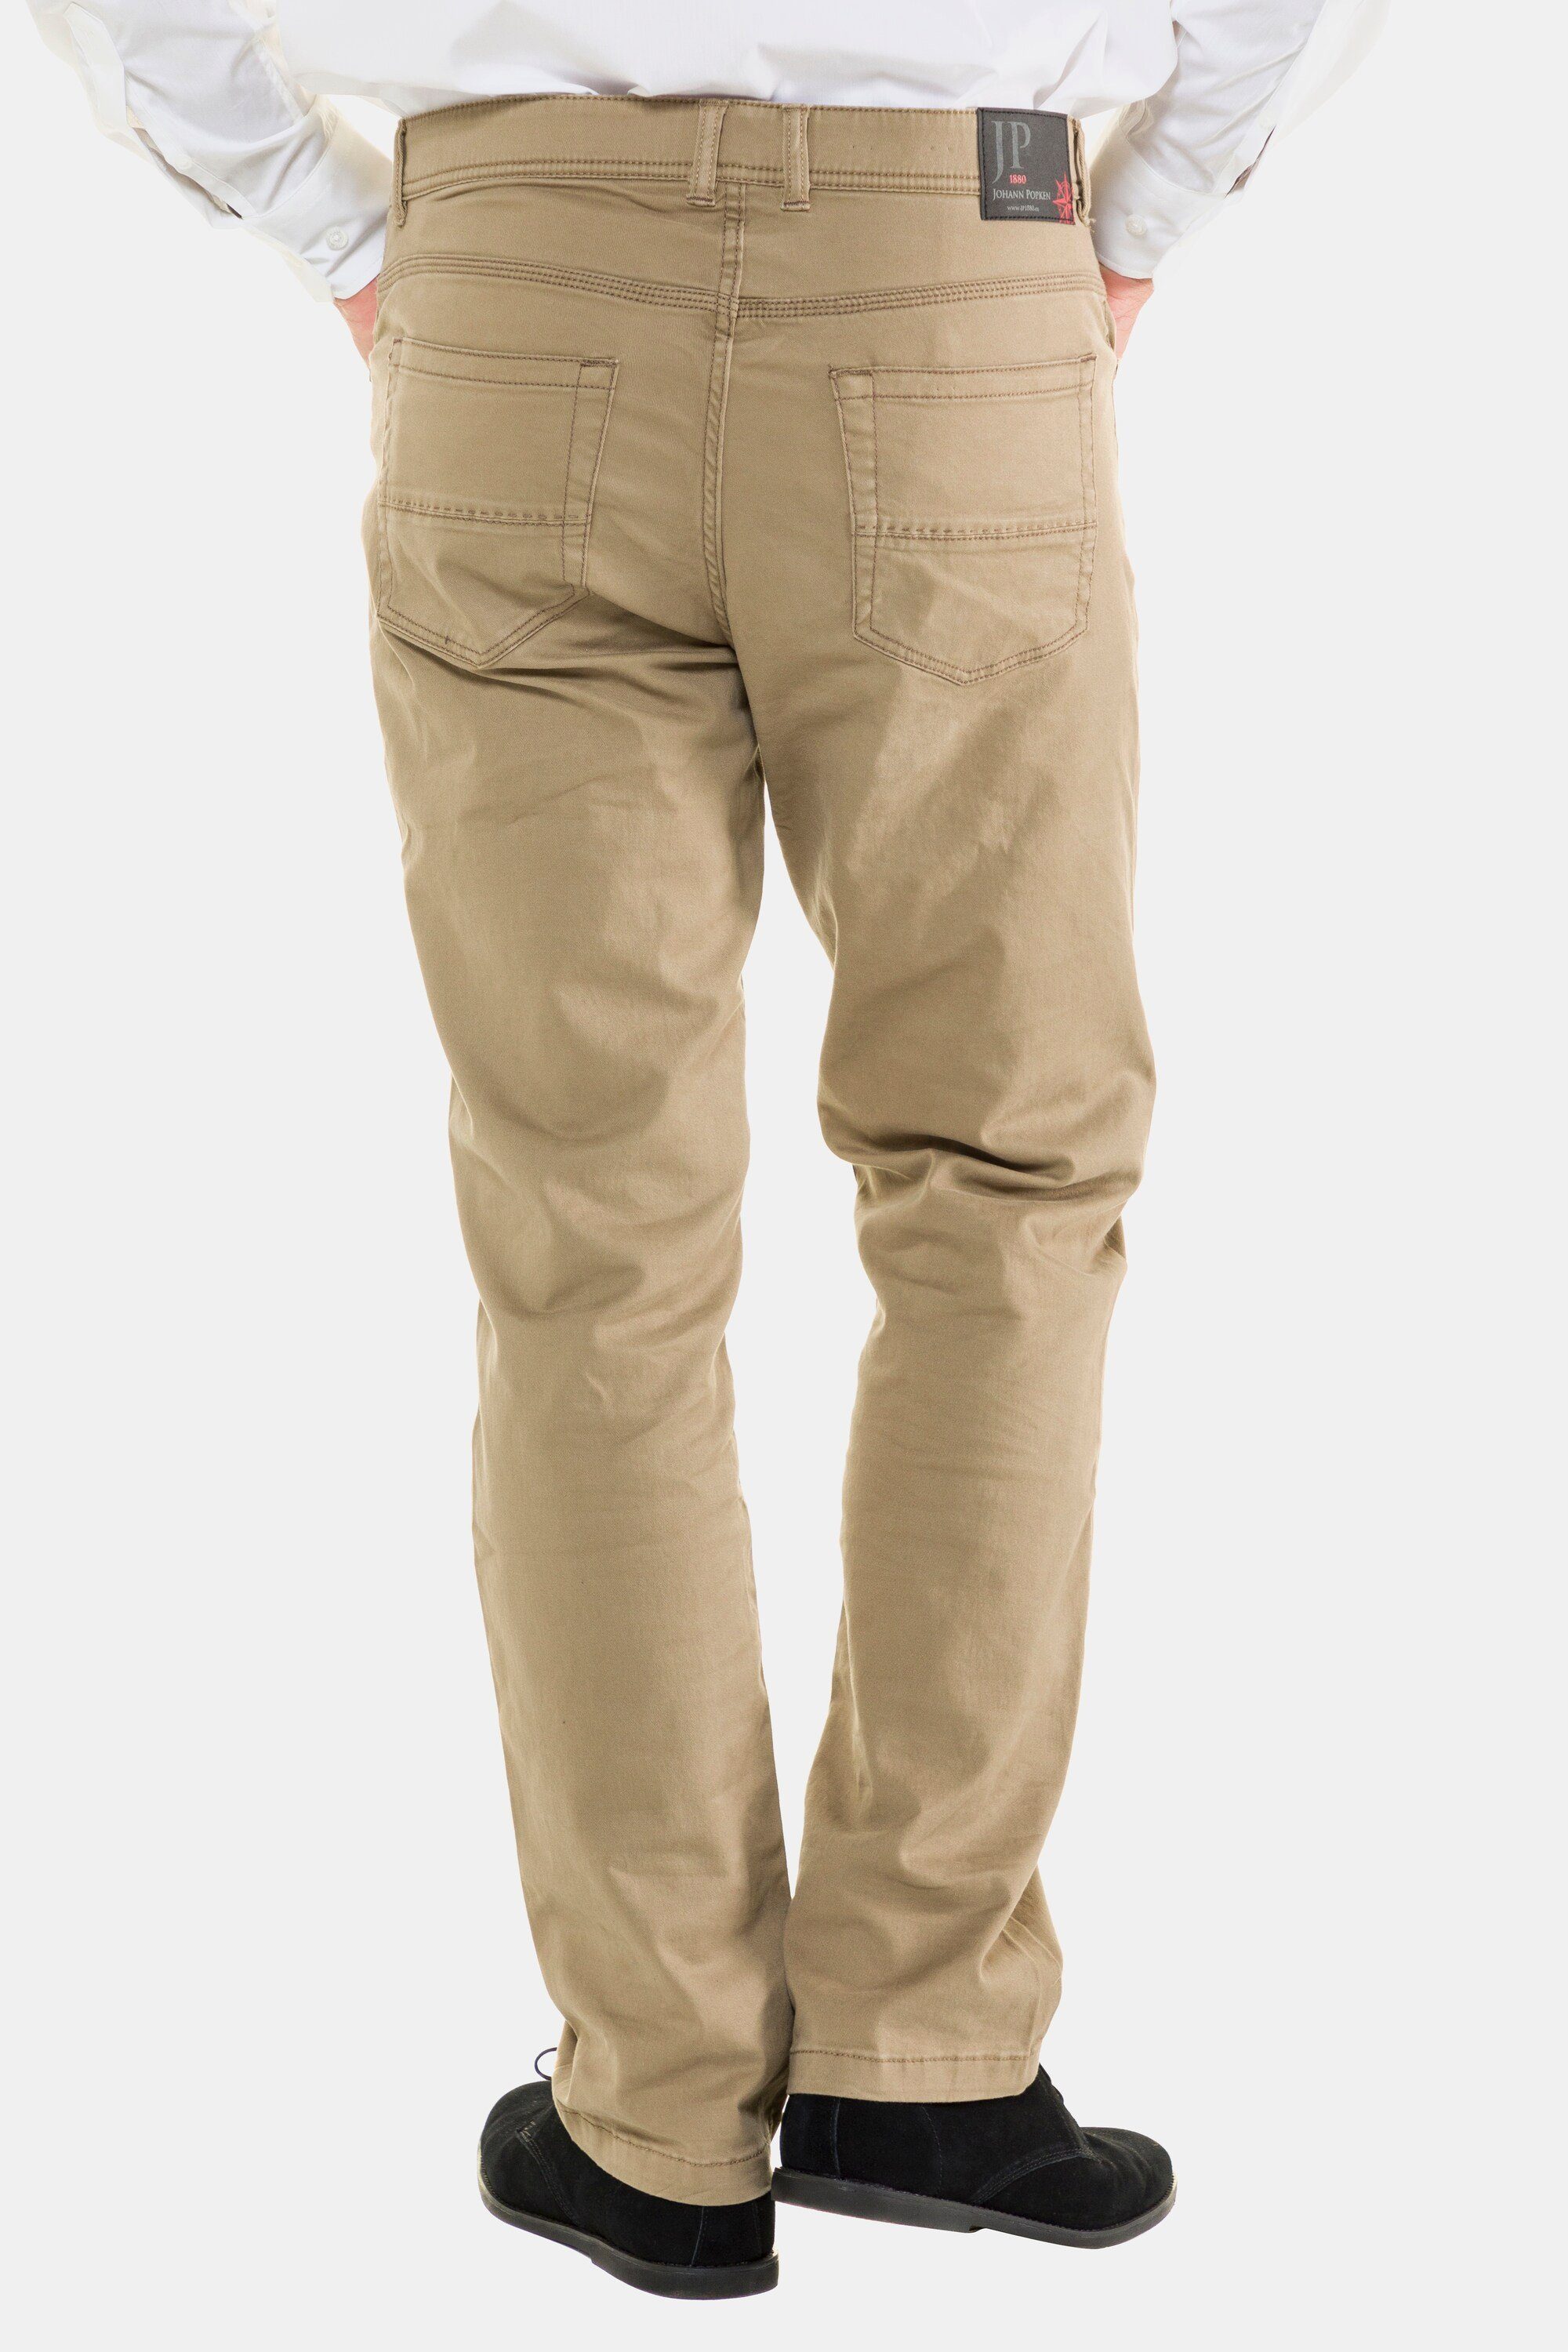 Regular Fit Bund elastischer JP1880 Hose sand 5-Pocket-Jeans 5-Pocket